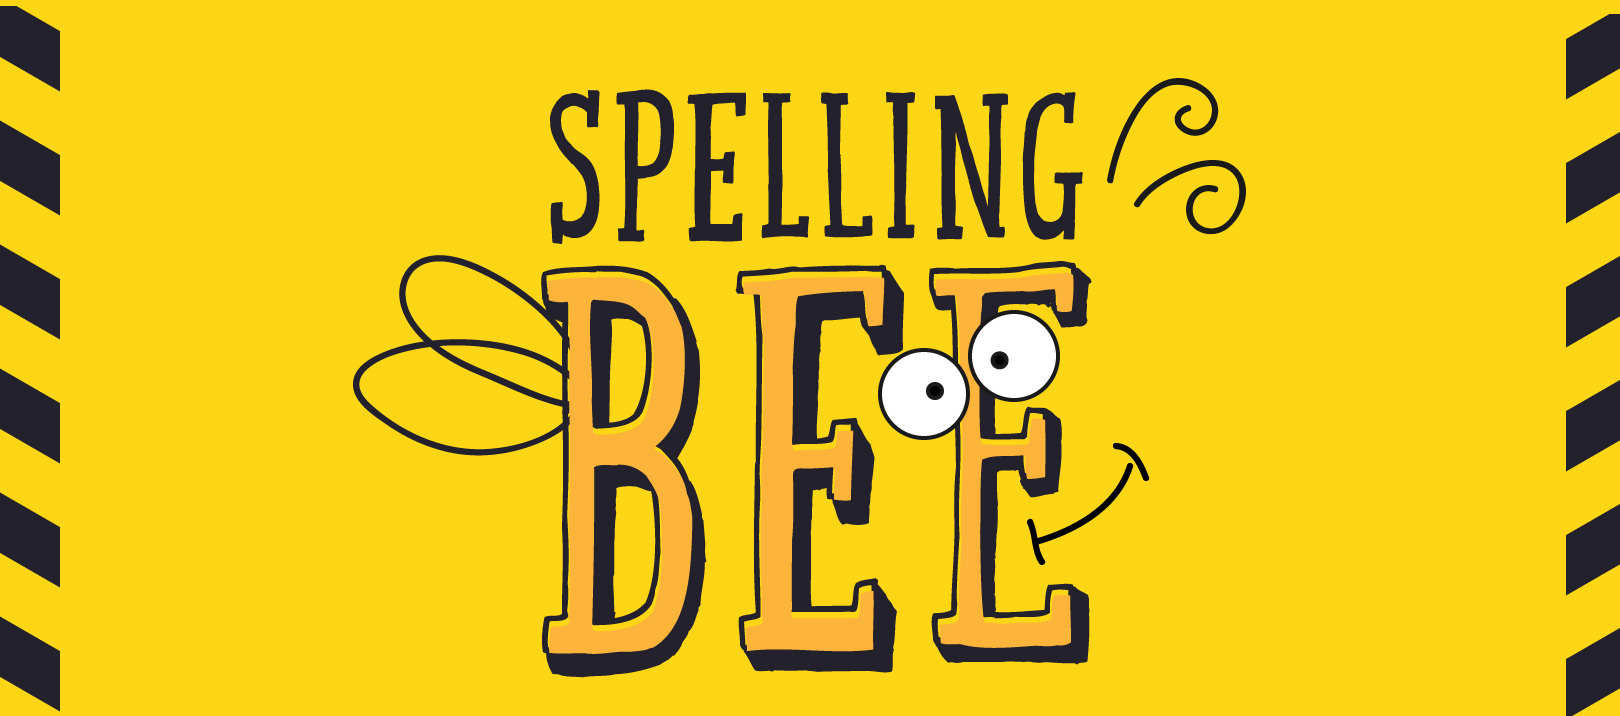 spelling bee.webp